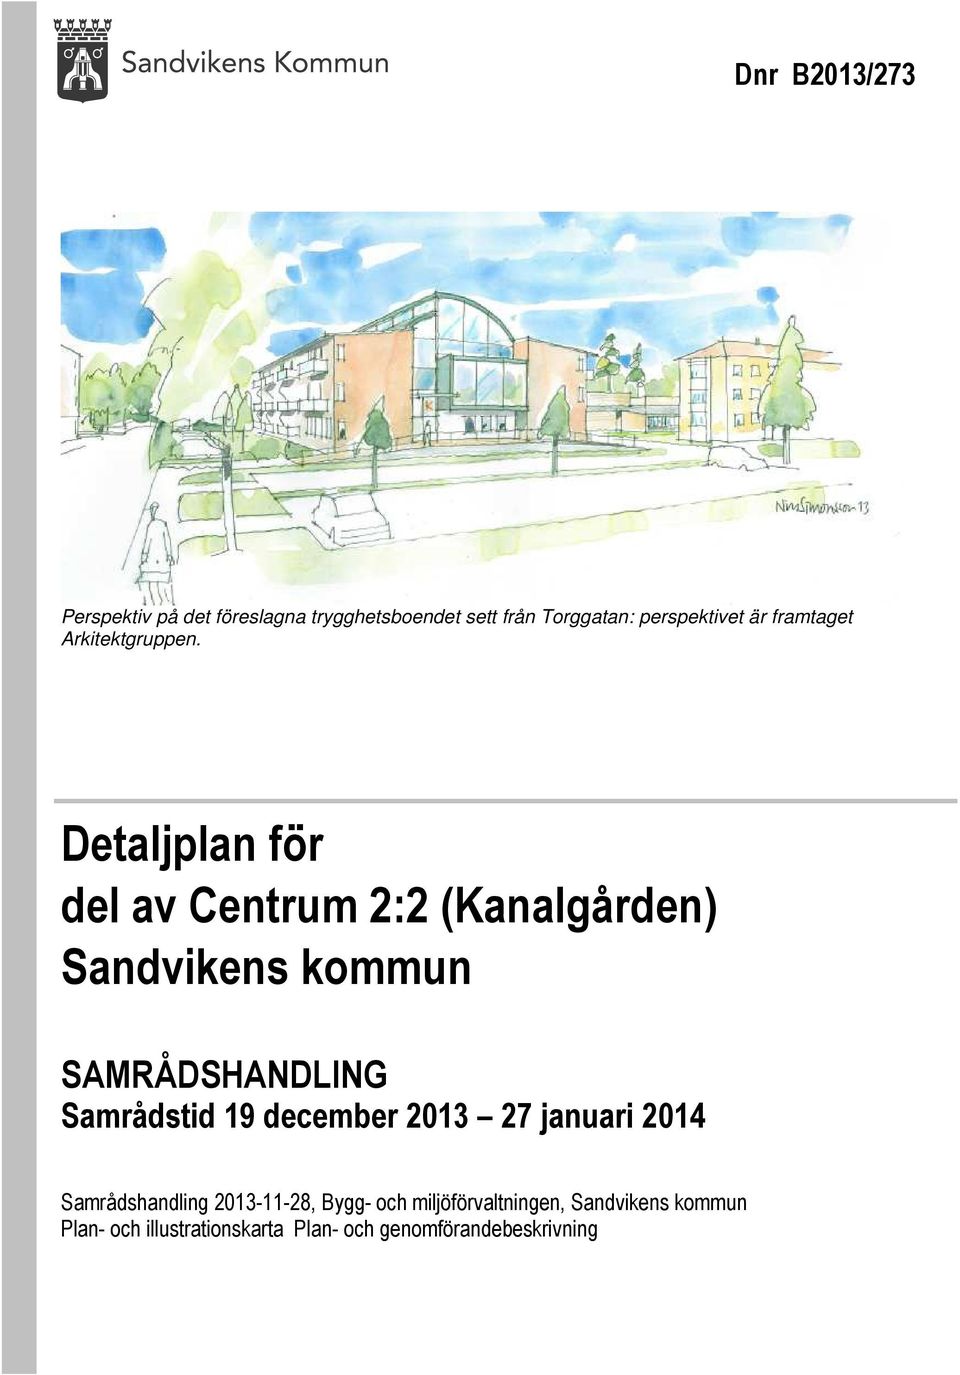 Detaljplan för del av Centrum 2:2 (Kanalgården) Sandvikens kommun SAMRÅDSHANDLING Samrådstid